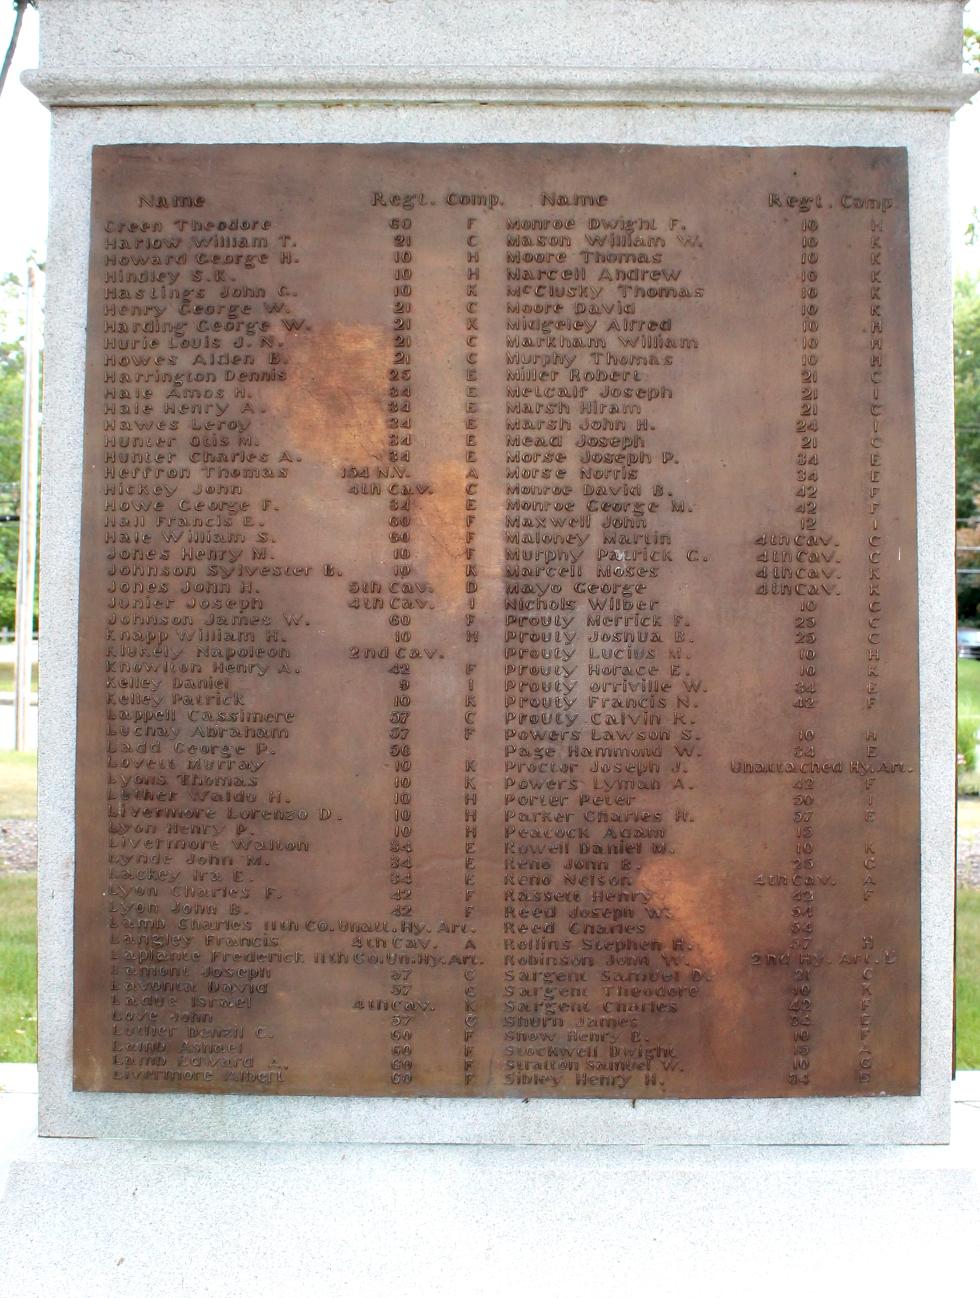 Spence Massachusetts Civil War Veterans Memorial